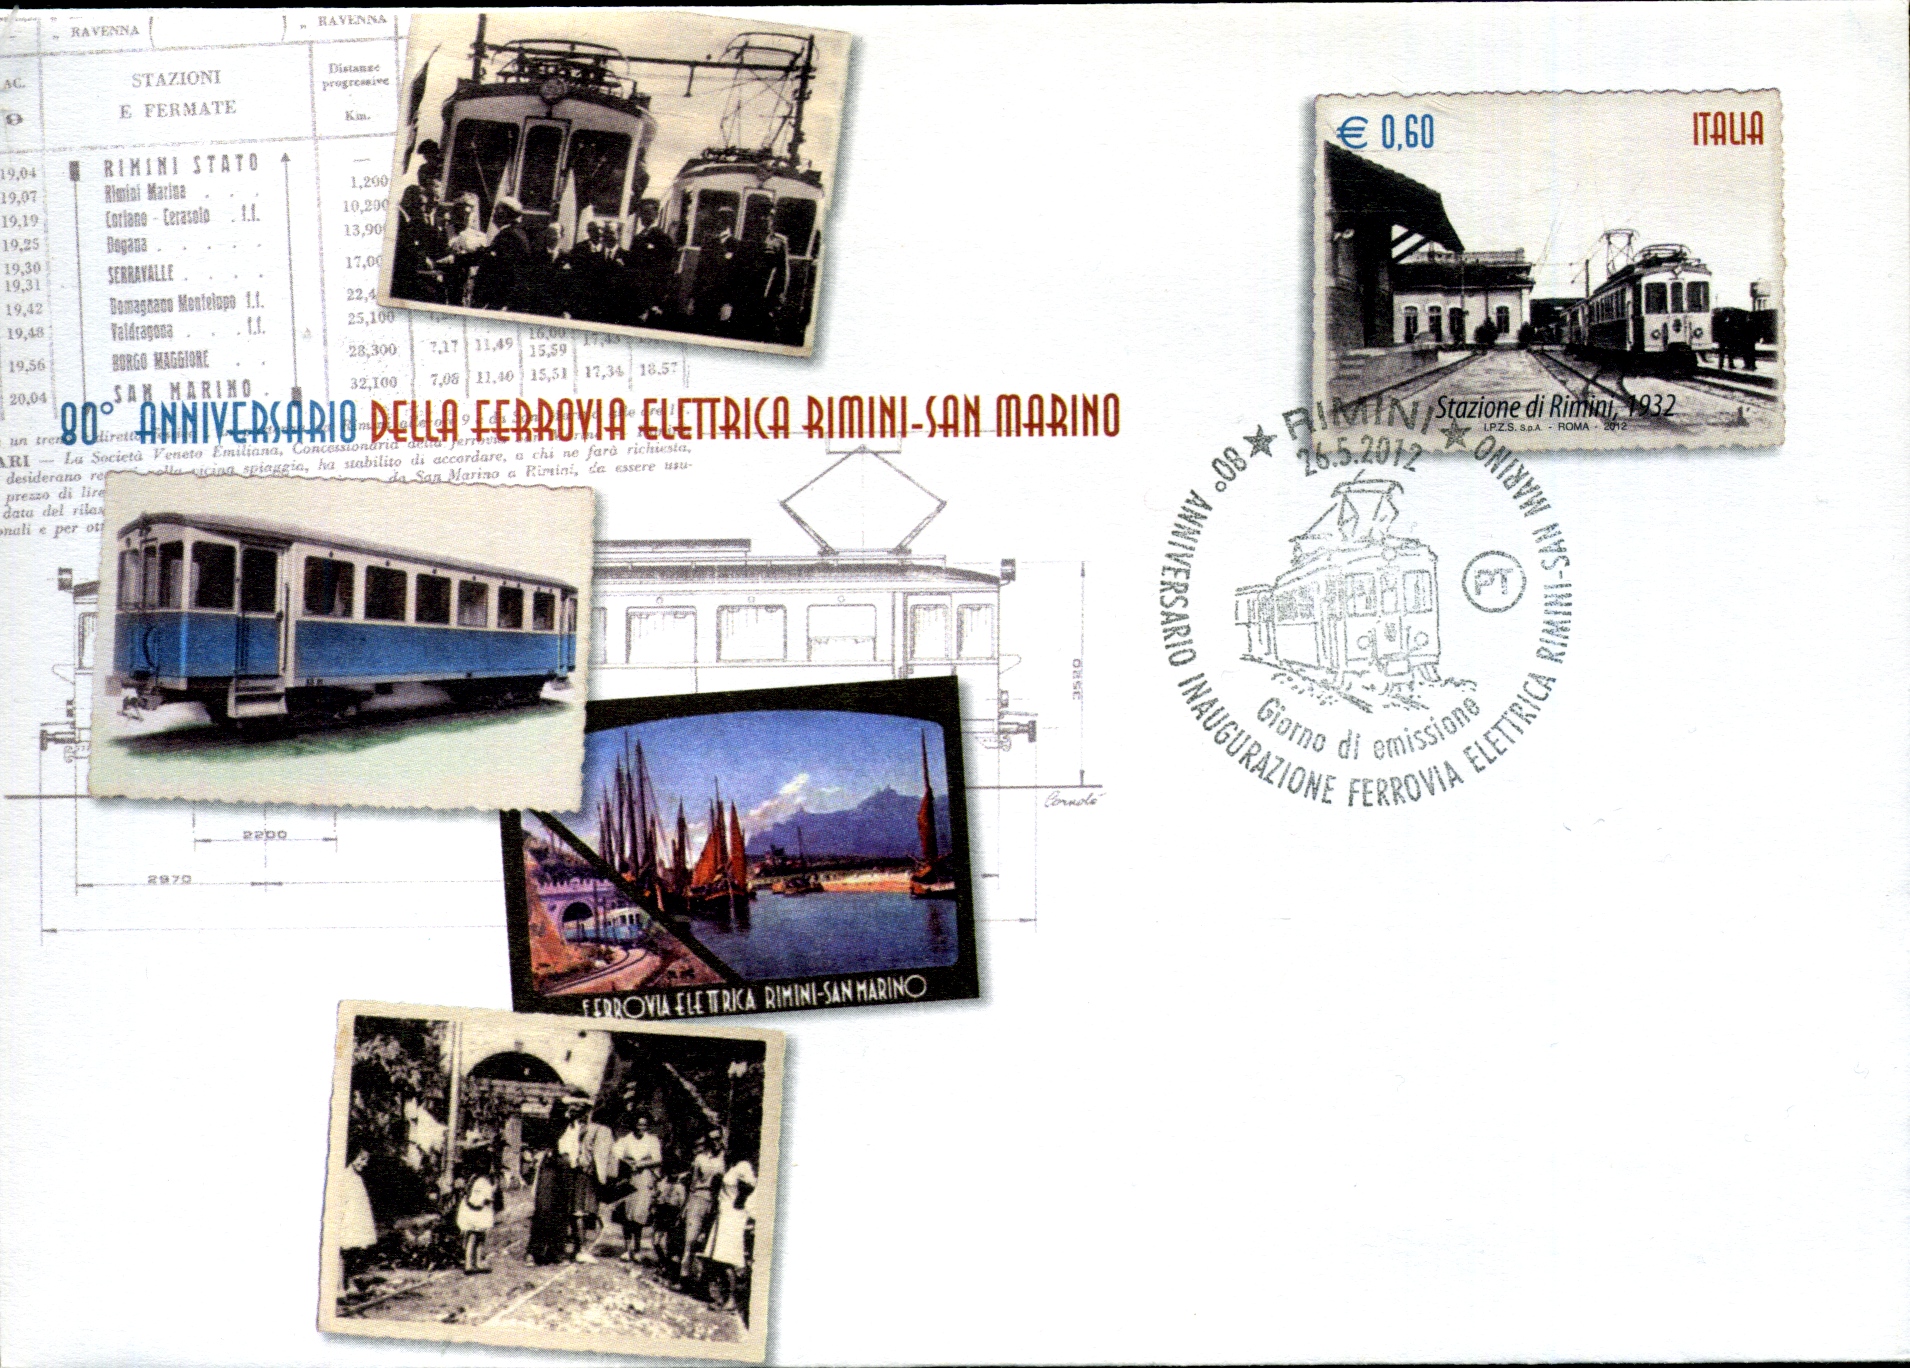 Postal Stationery